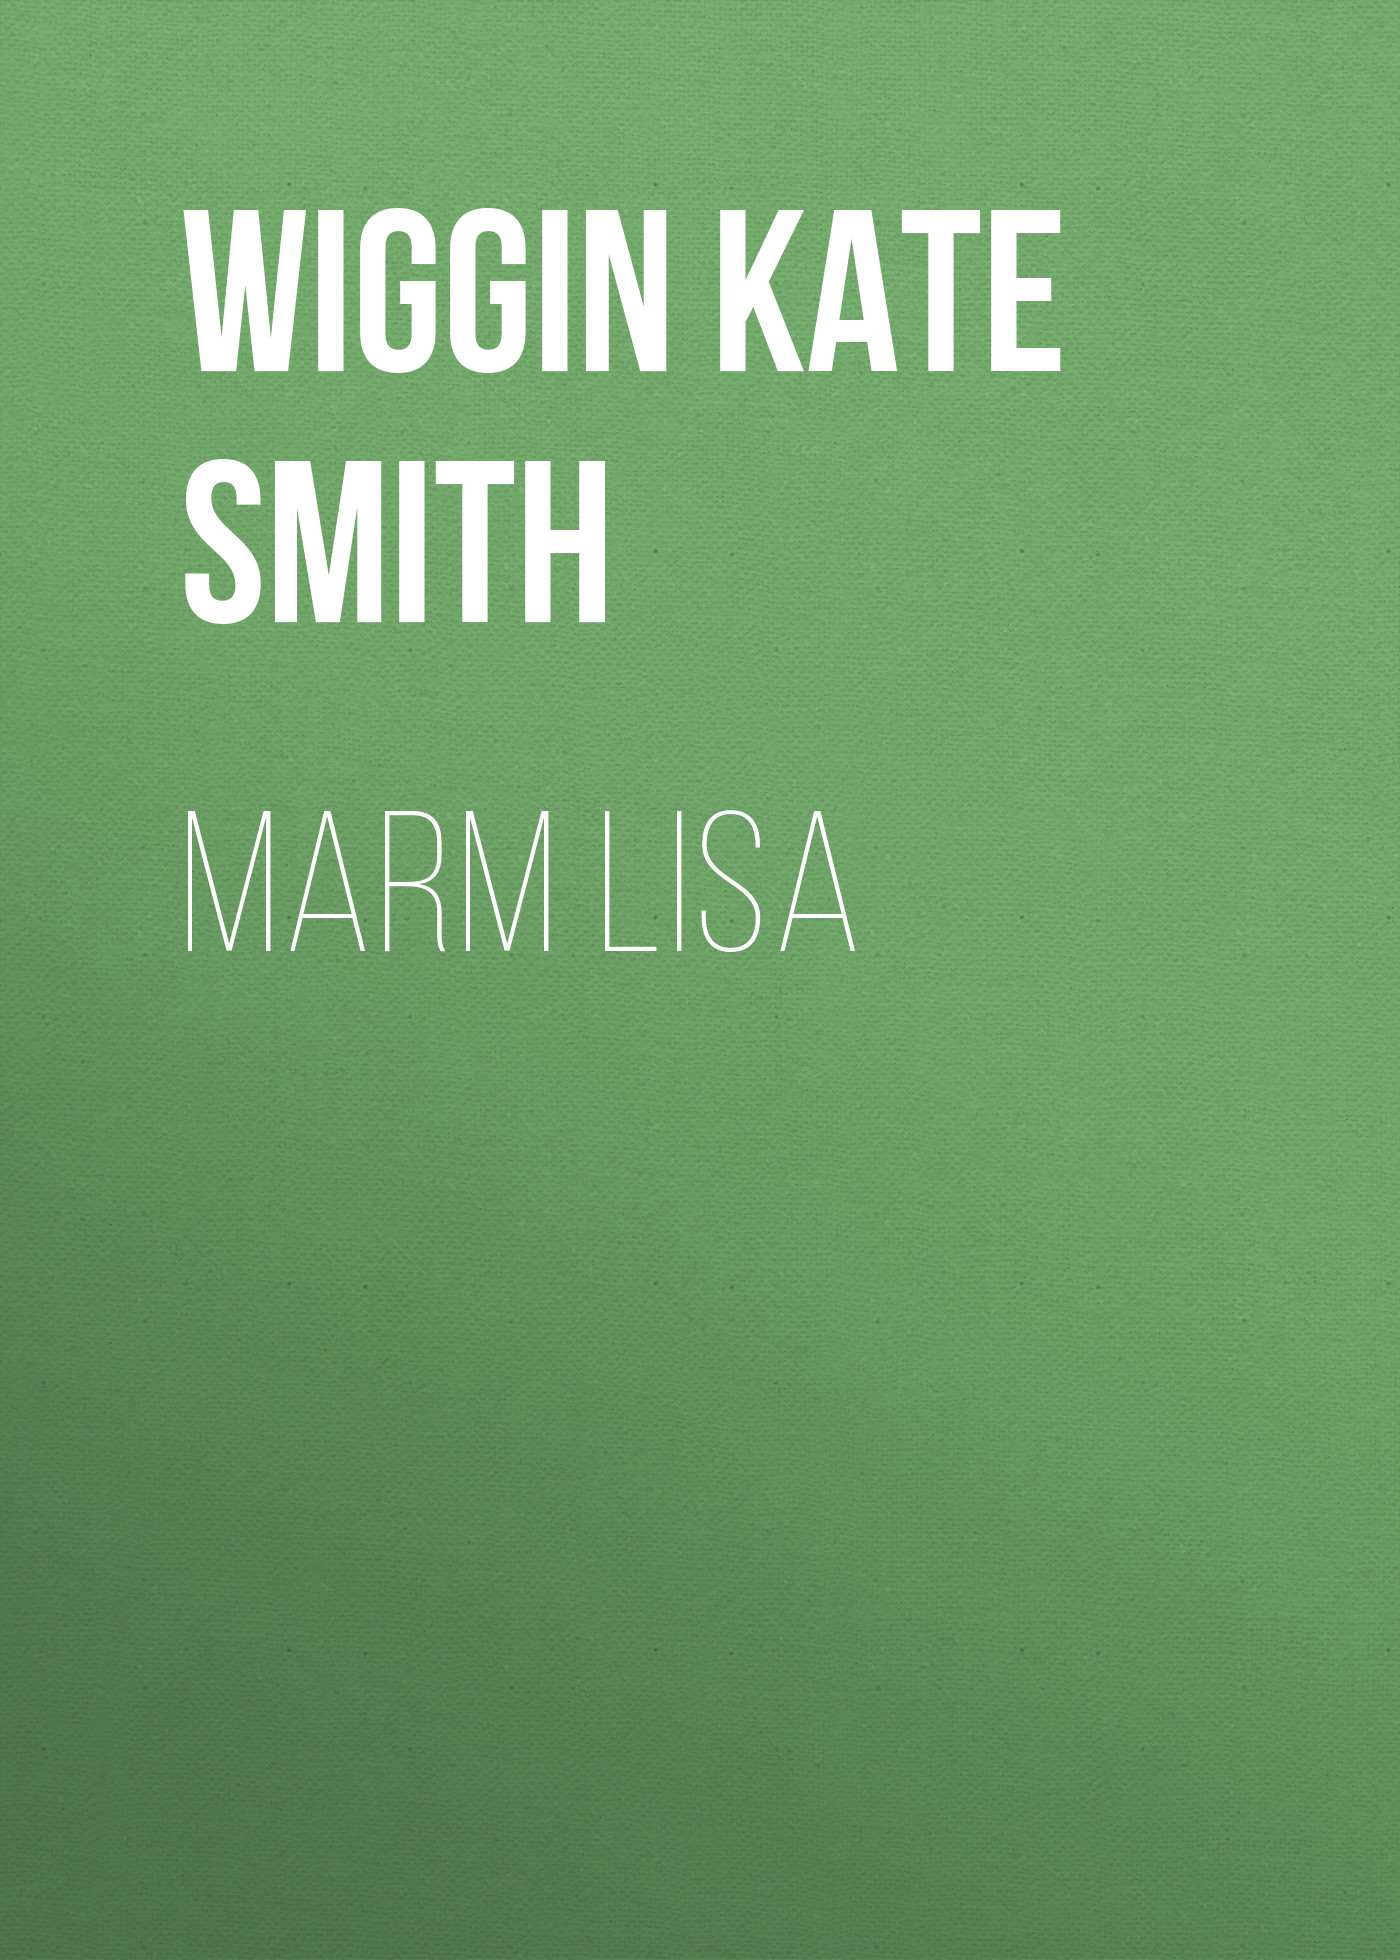 Книга Marm Lisa из серии , созданная Kate Wiggin, может относится к жанру Зарубежная классика, Зарубежная старинная литература. Стоимость электронной книги Marm Lisa с идентификатором 36323716 составляет 0 руб.